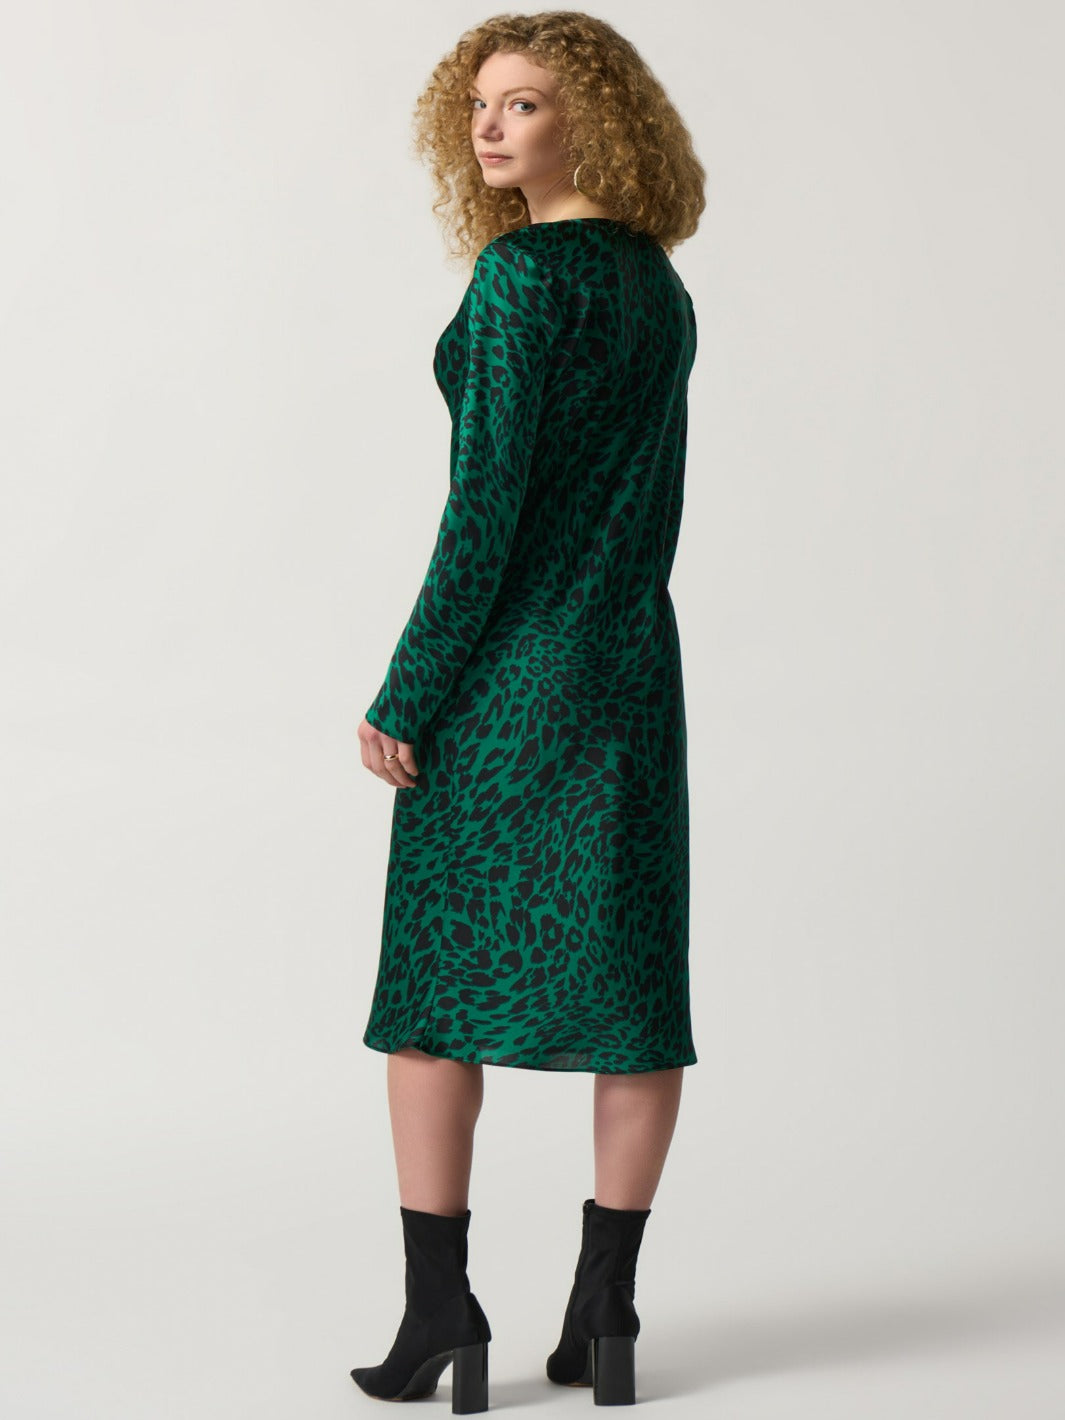 Joseph Ribkoff - Leopard Print Sheath Dress in Green 233115-Nicola Ross